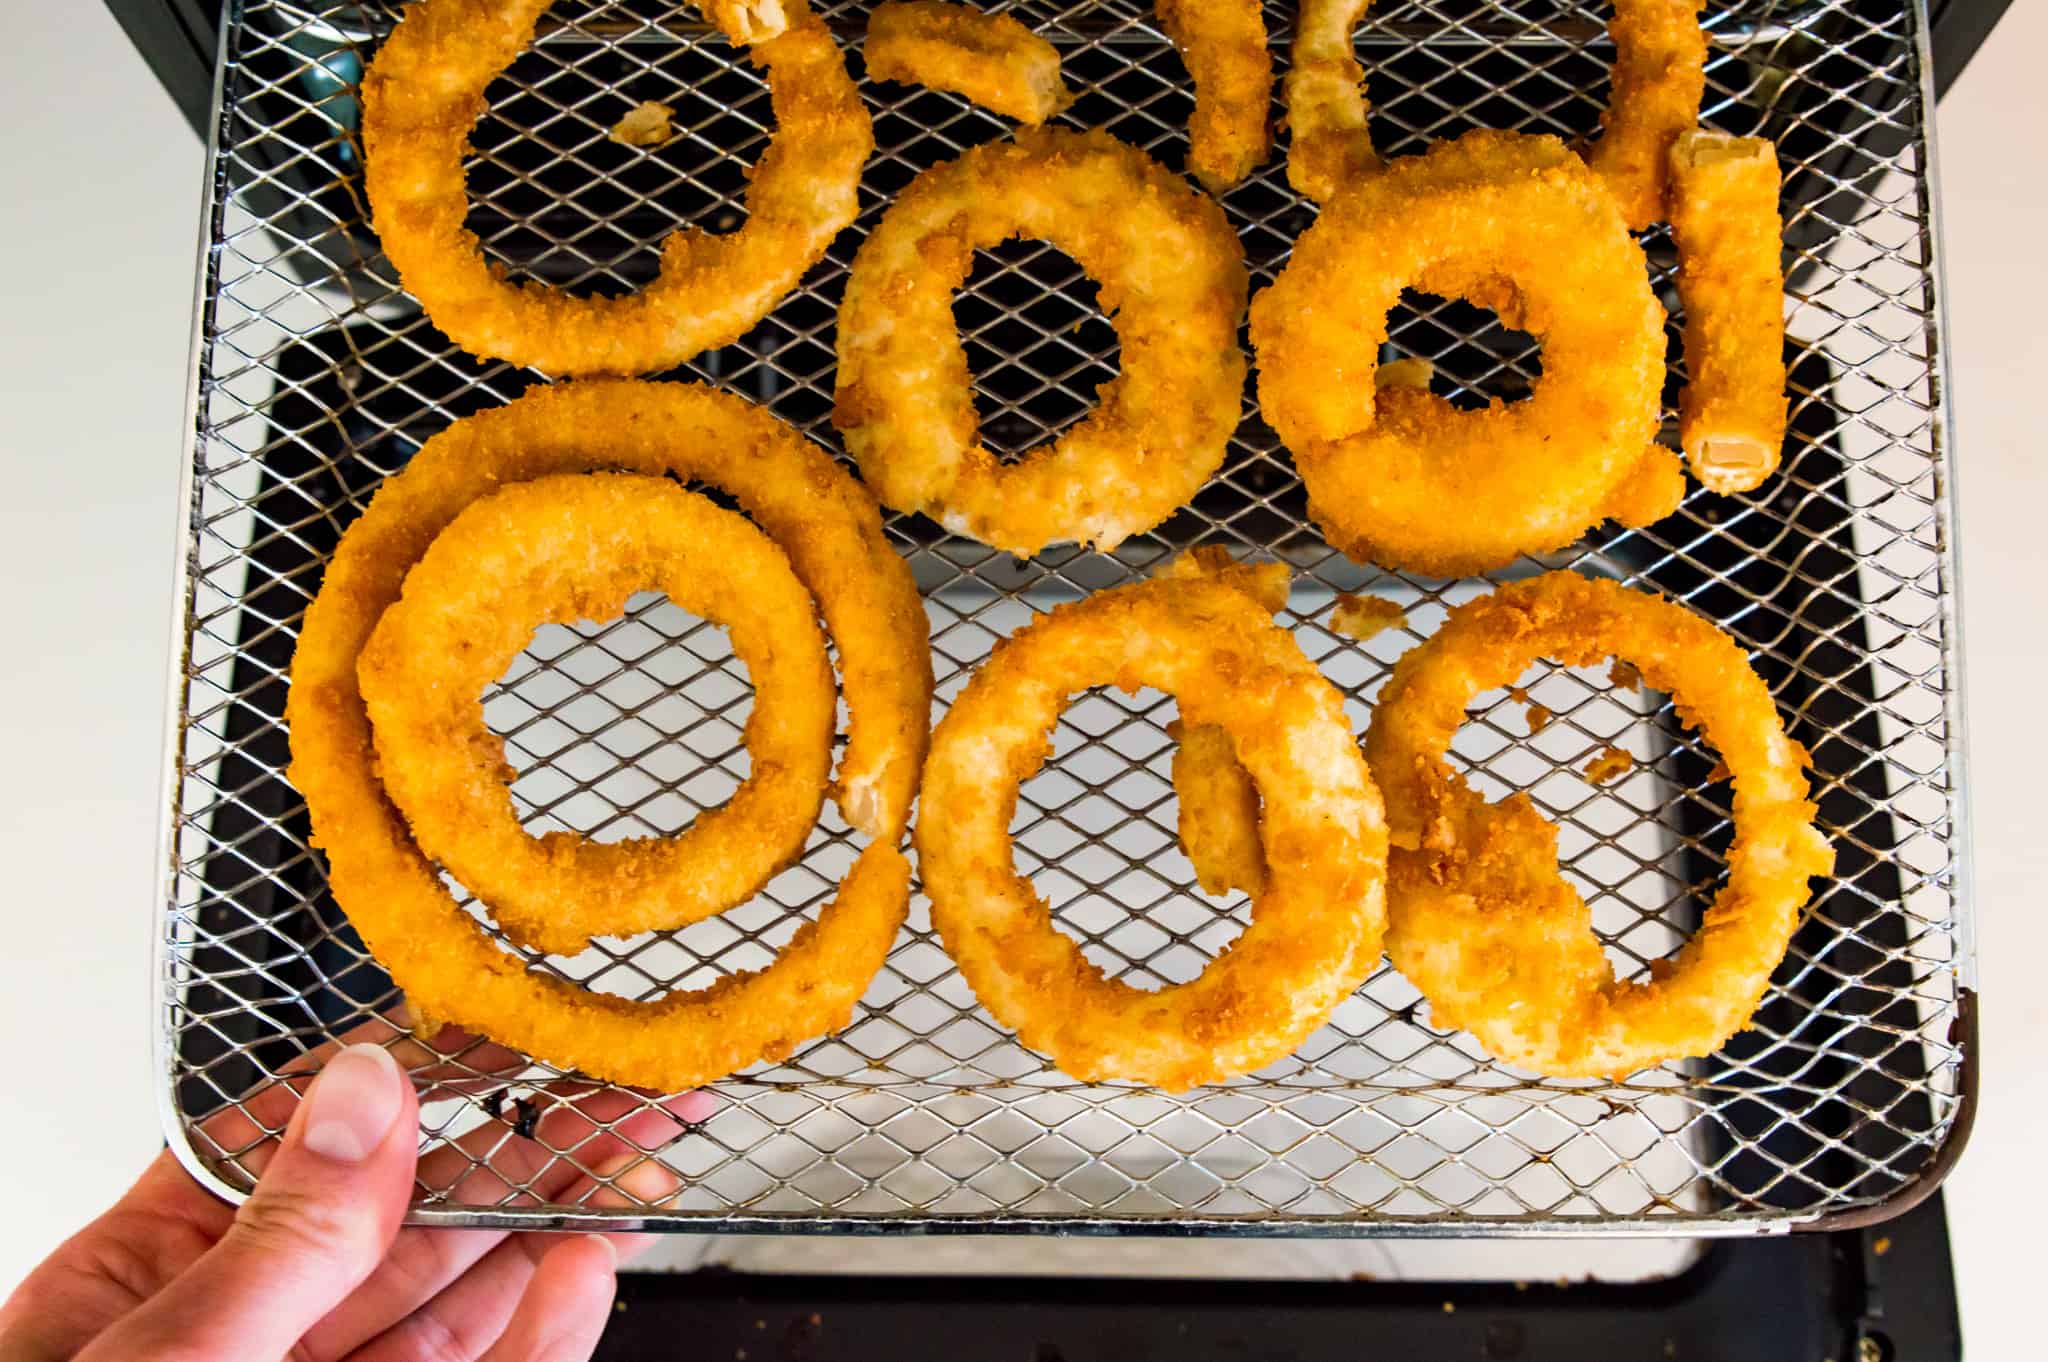 Frozen onion rings on an air fryer rack.